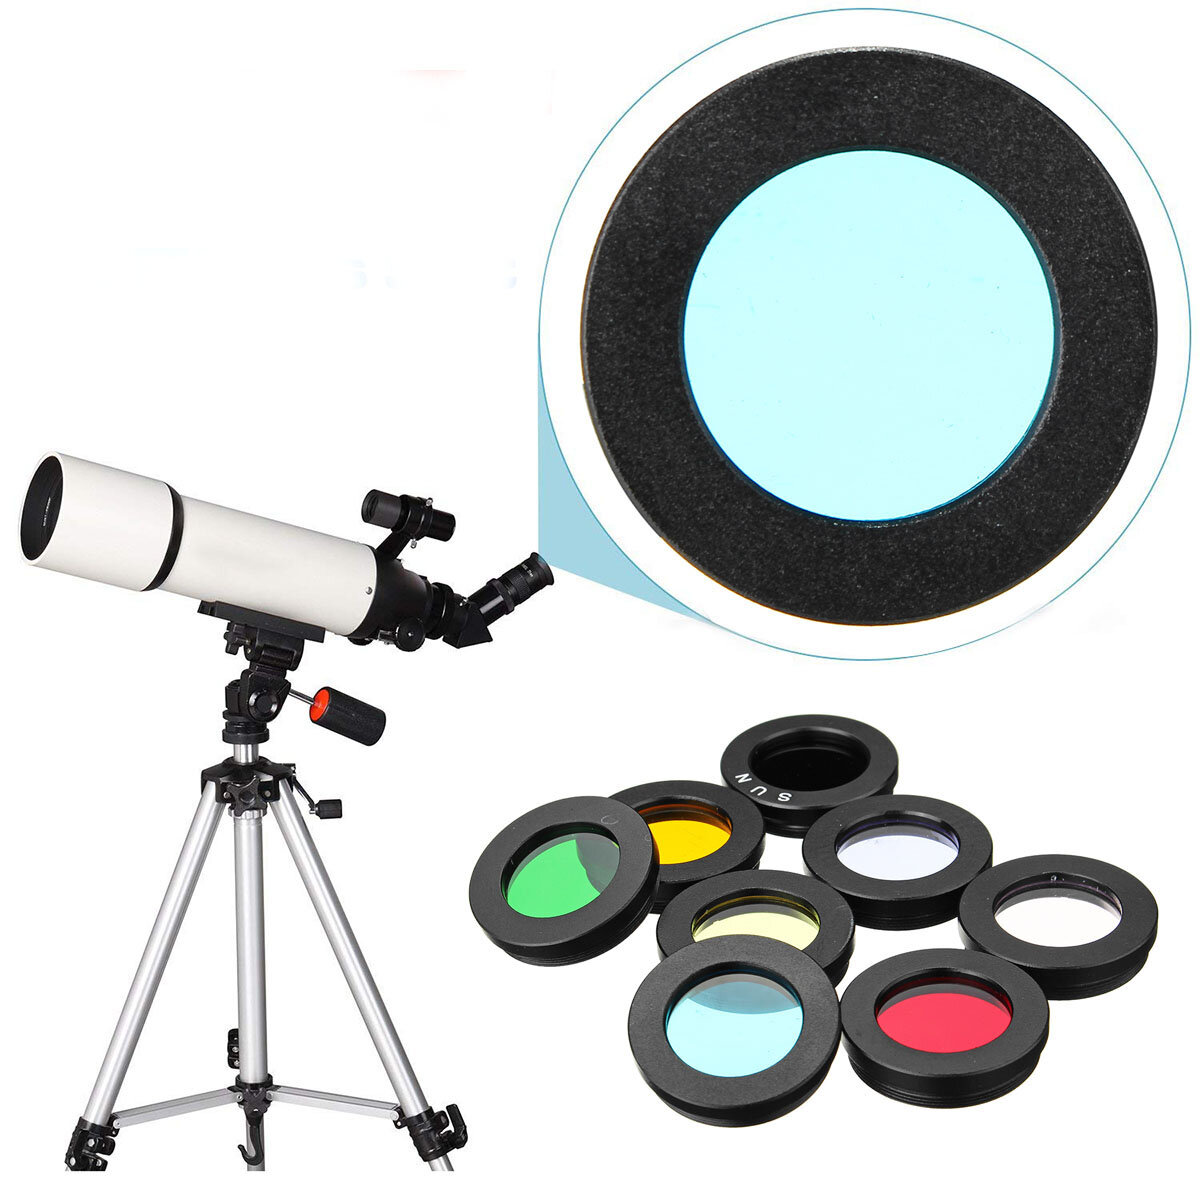 Набор фильтров для объектива телескопа 8 штук 1,25 дюйма: фильтр туманности, фильтр Луны, фильтр Солнца и другие аксессуары для окуляра